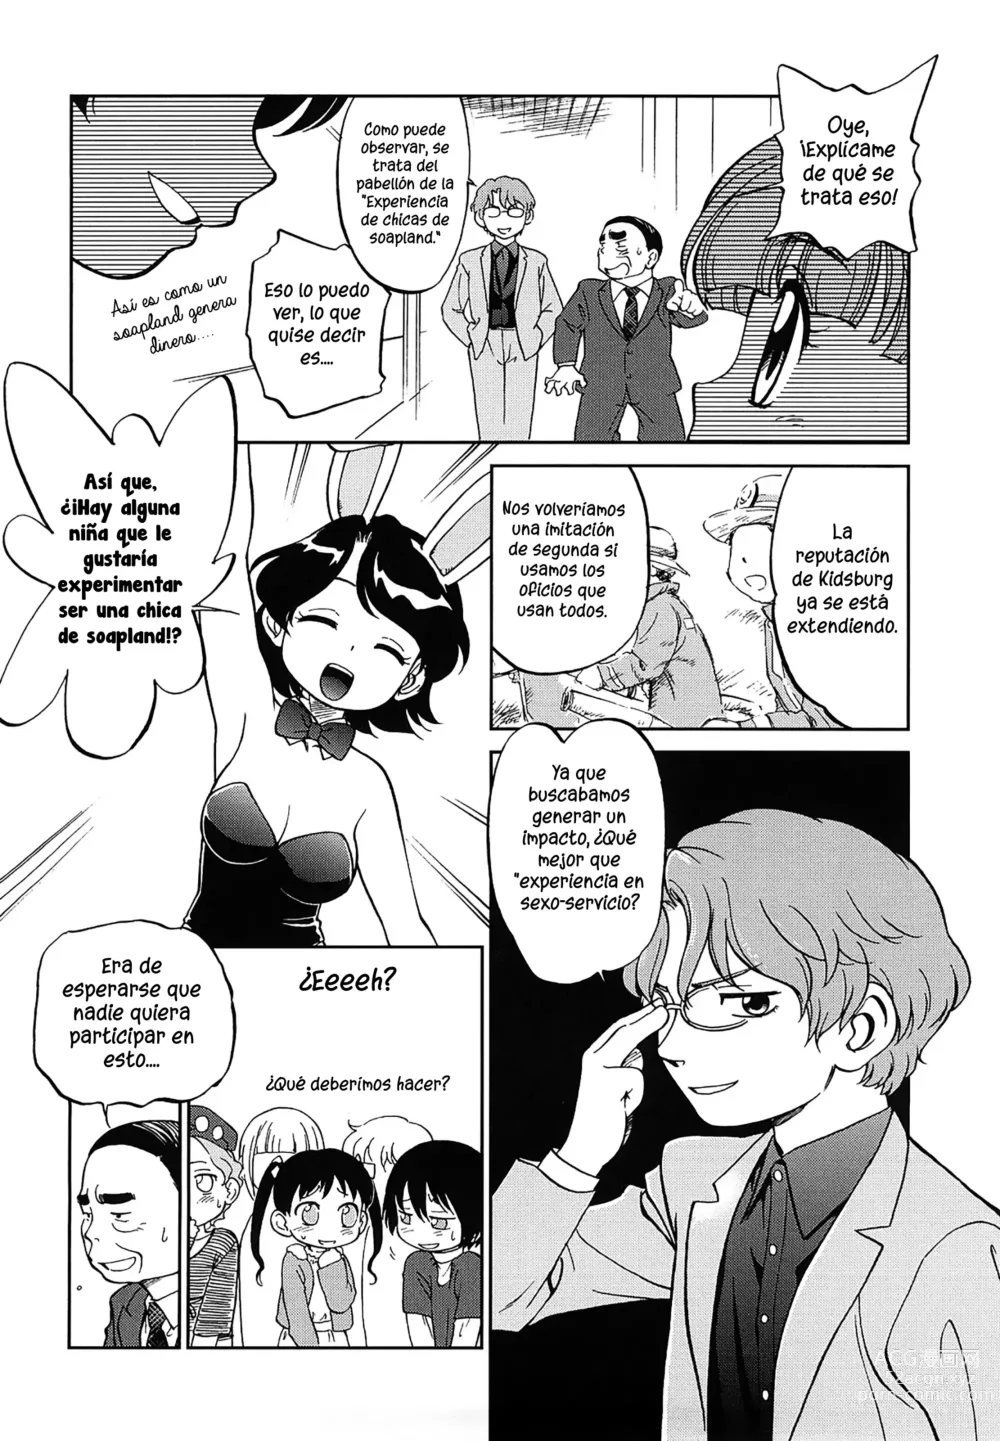 Page 4 of manga Niños trabajando